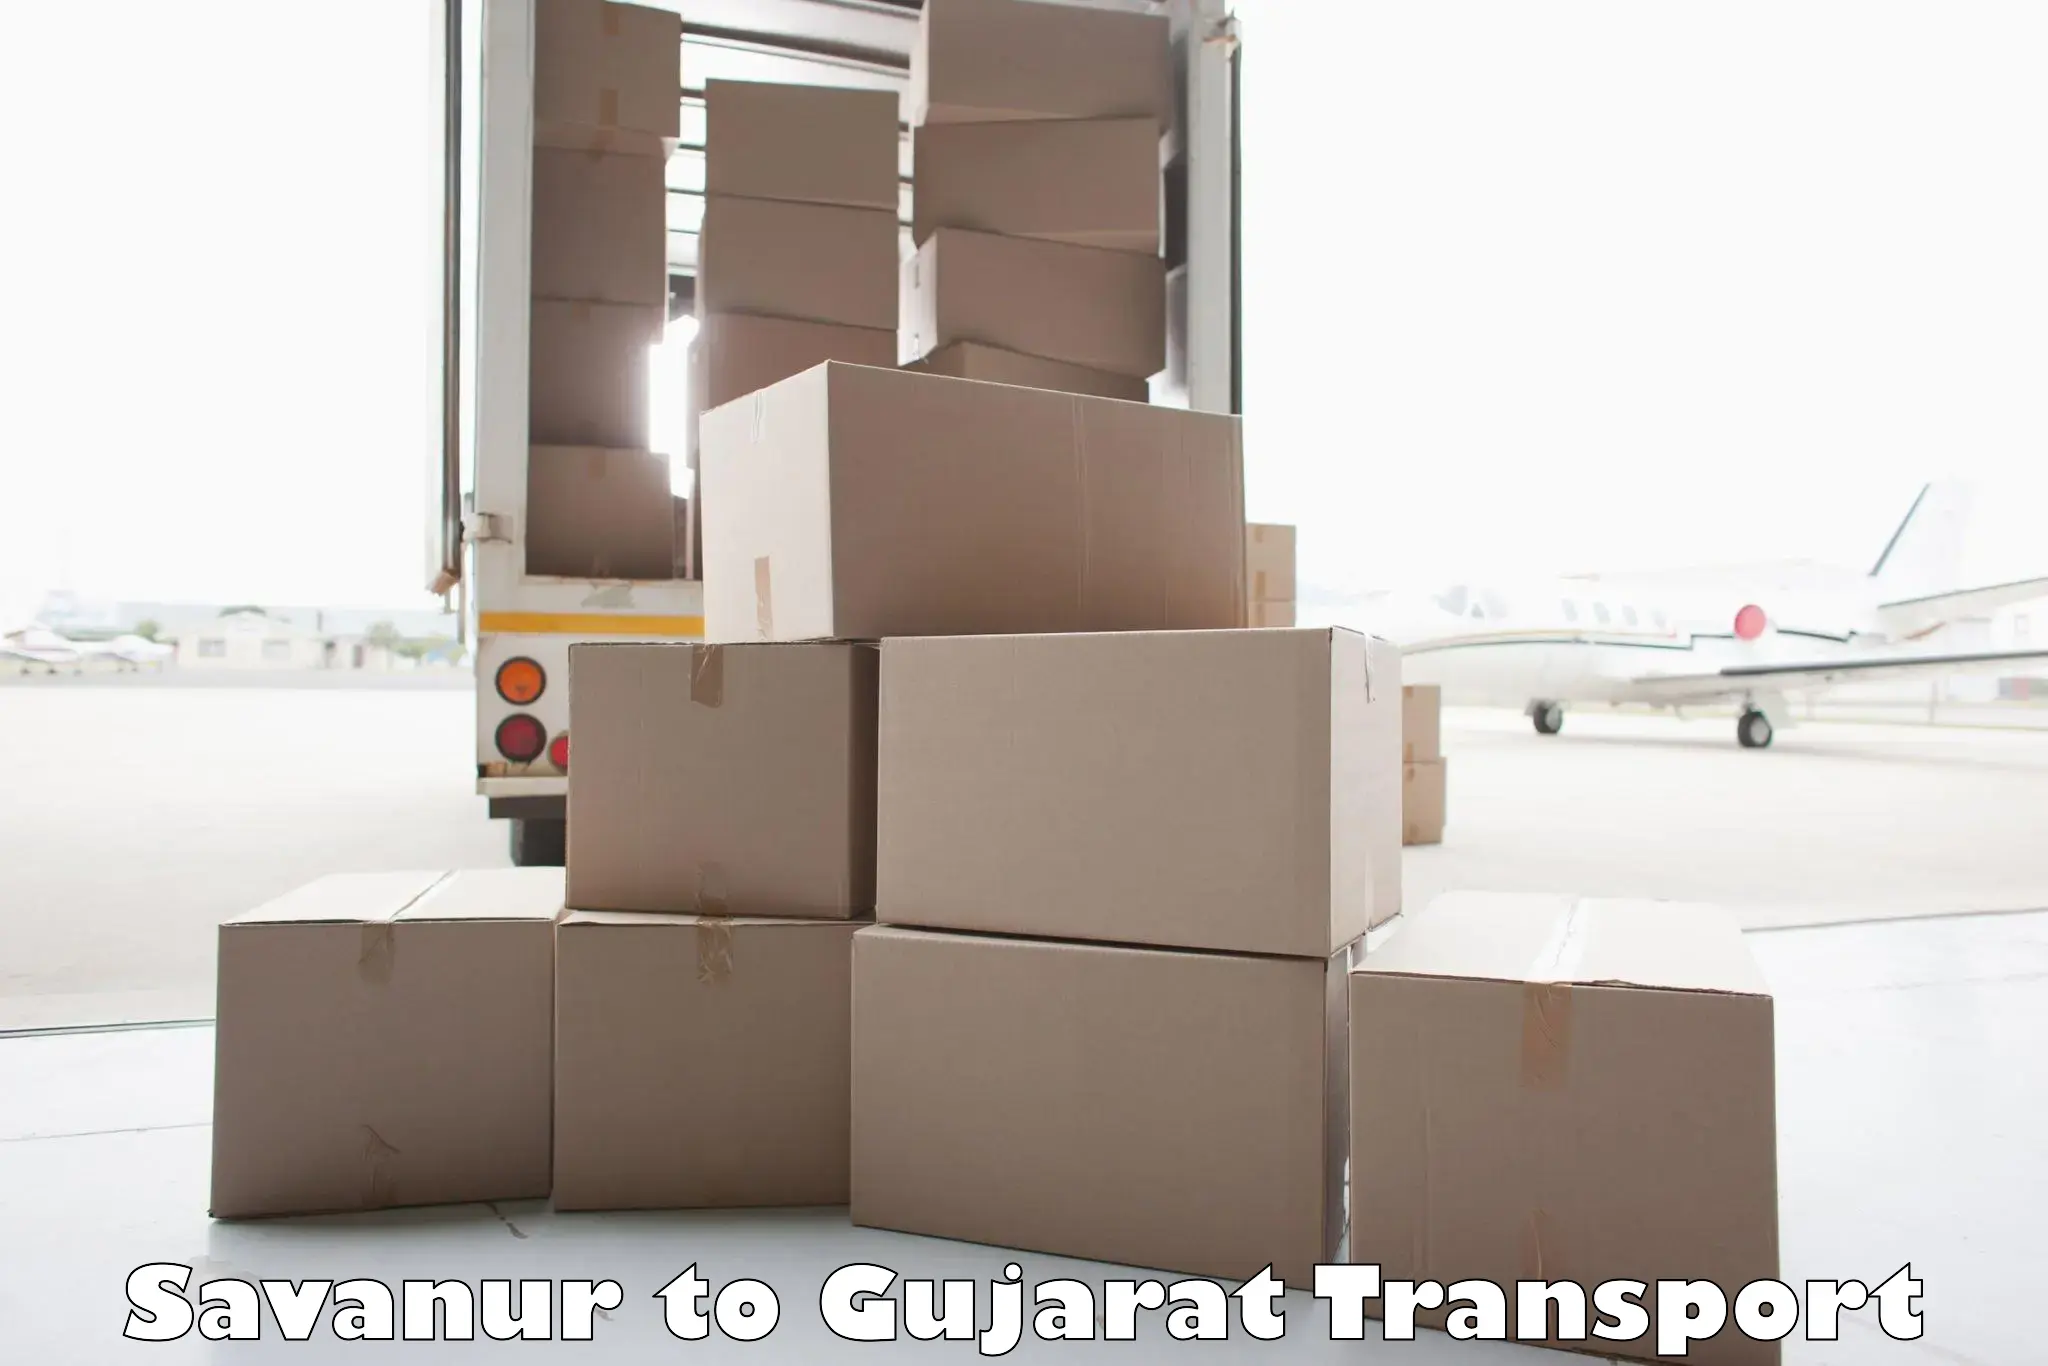 Daily transport service Savanur to Gandhidham